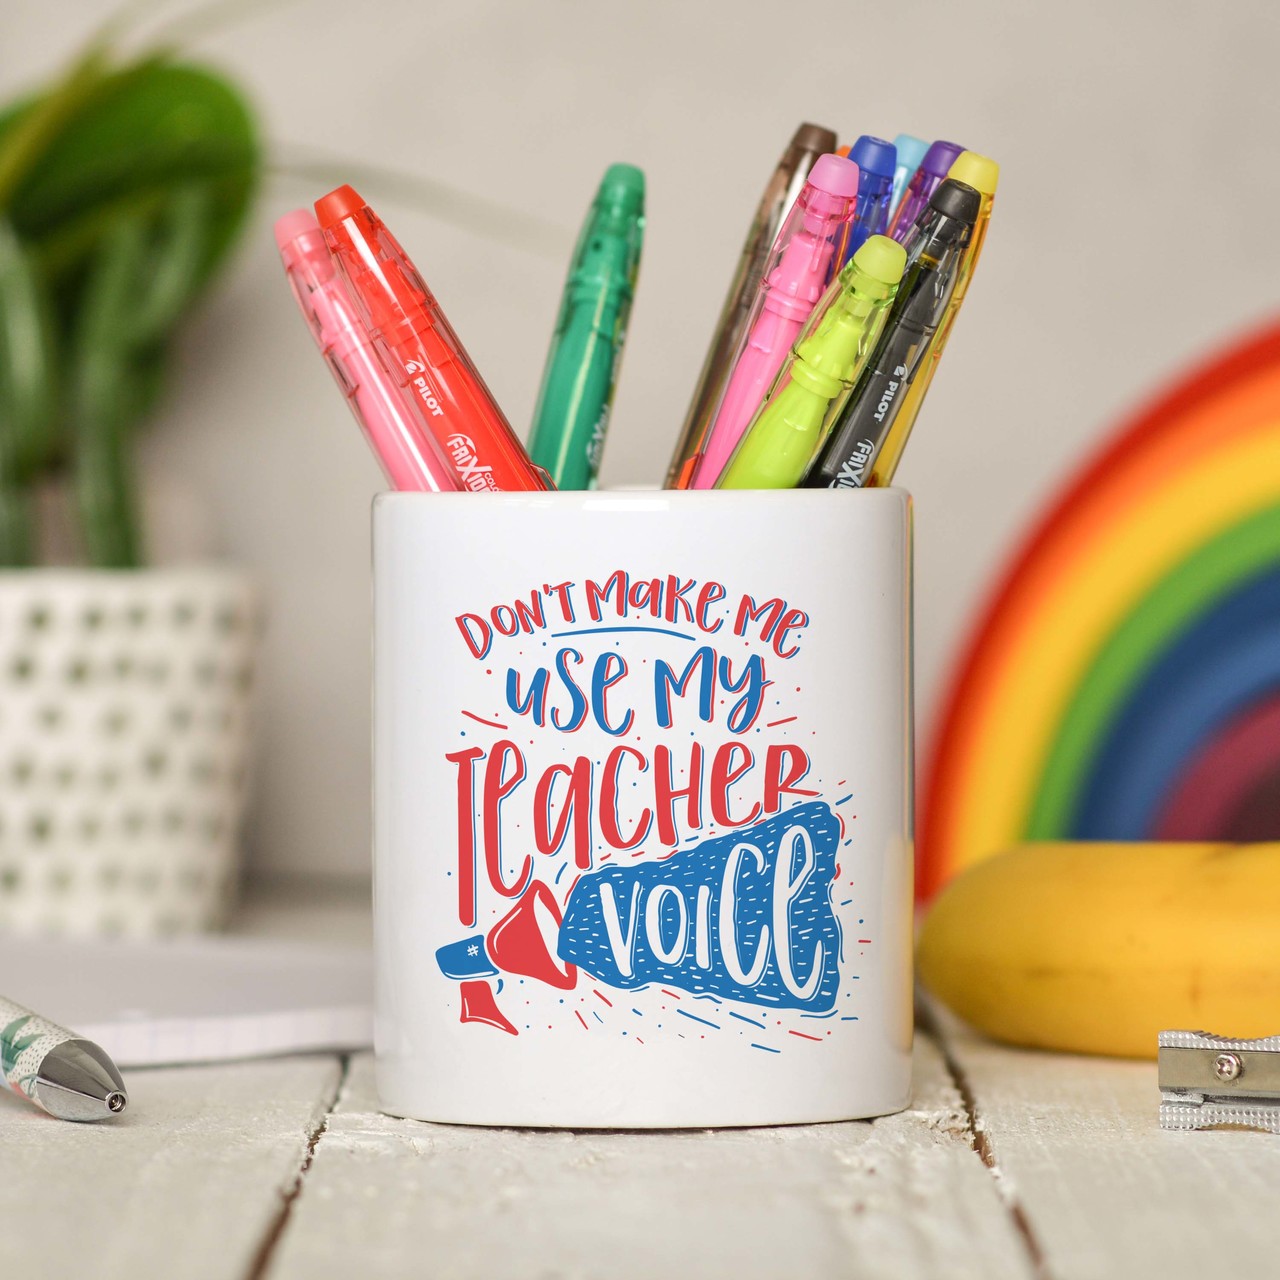 Don’t make me use teacher voice Pencil Pot